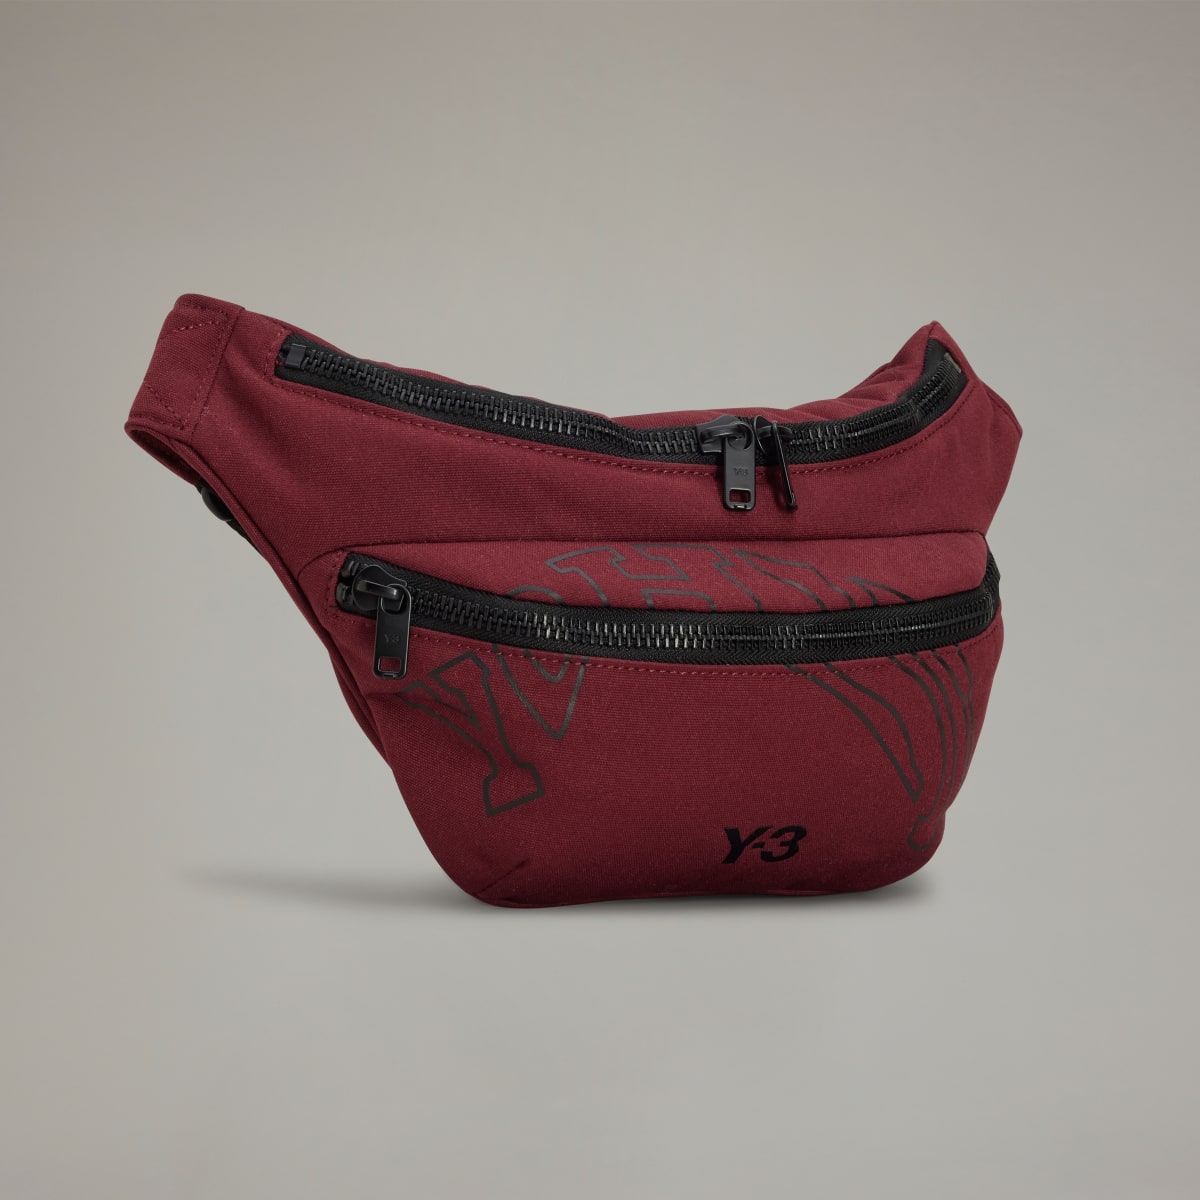 Adidas Y-3 Morphed Crossbody Bag. 4